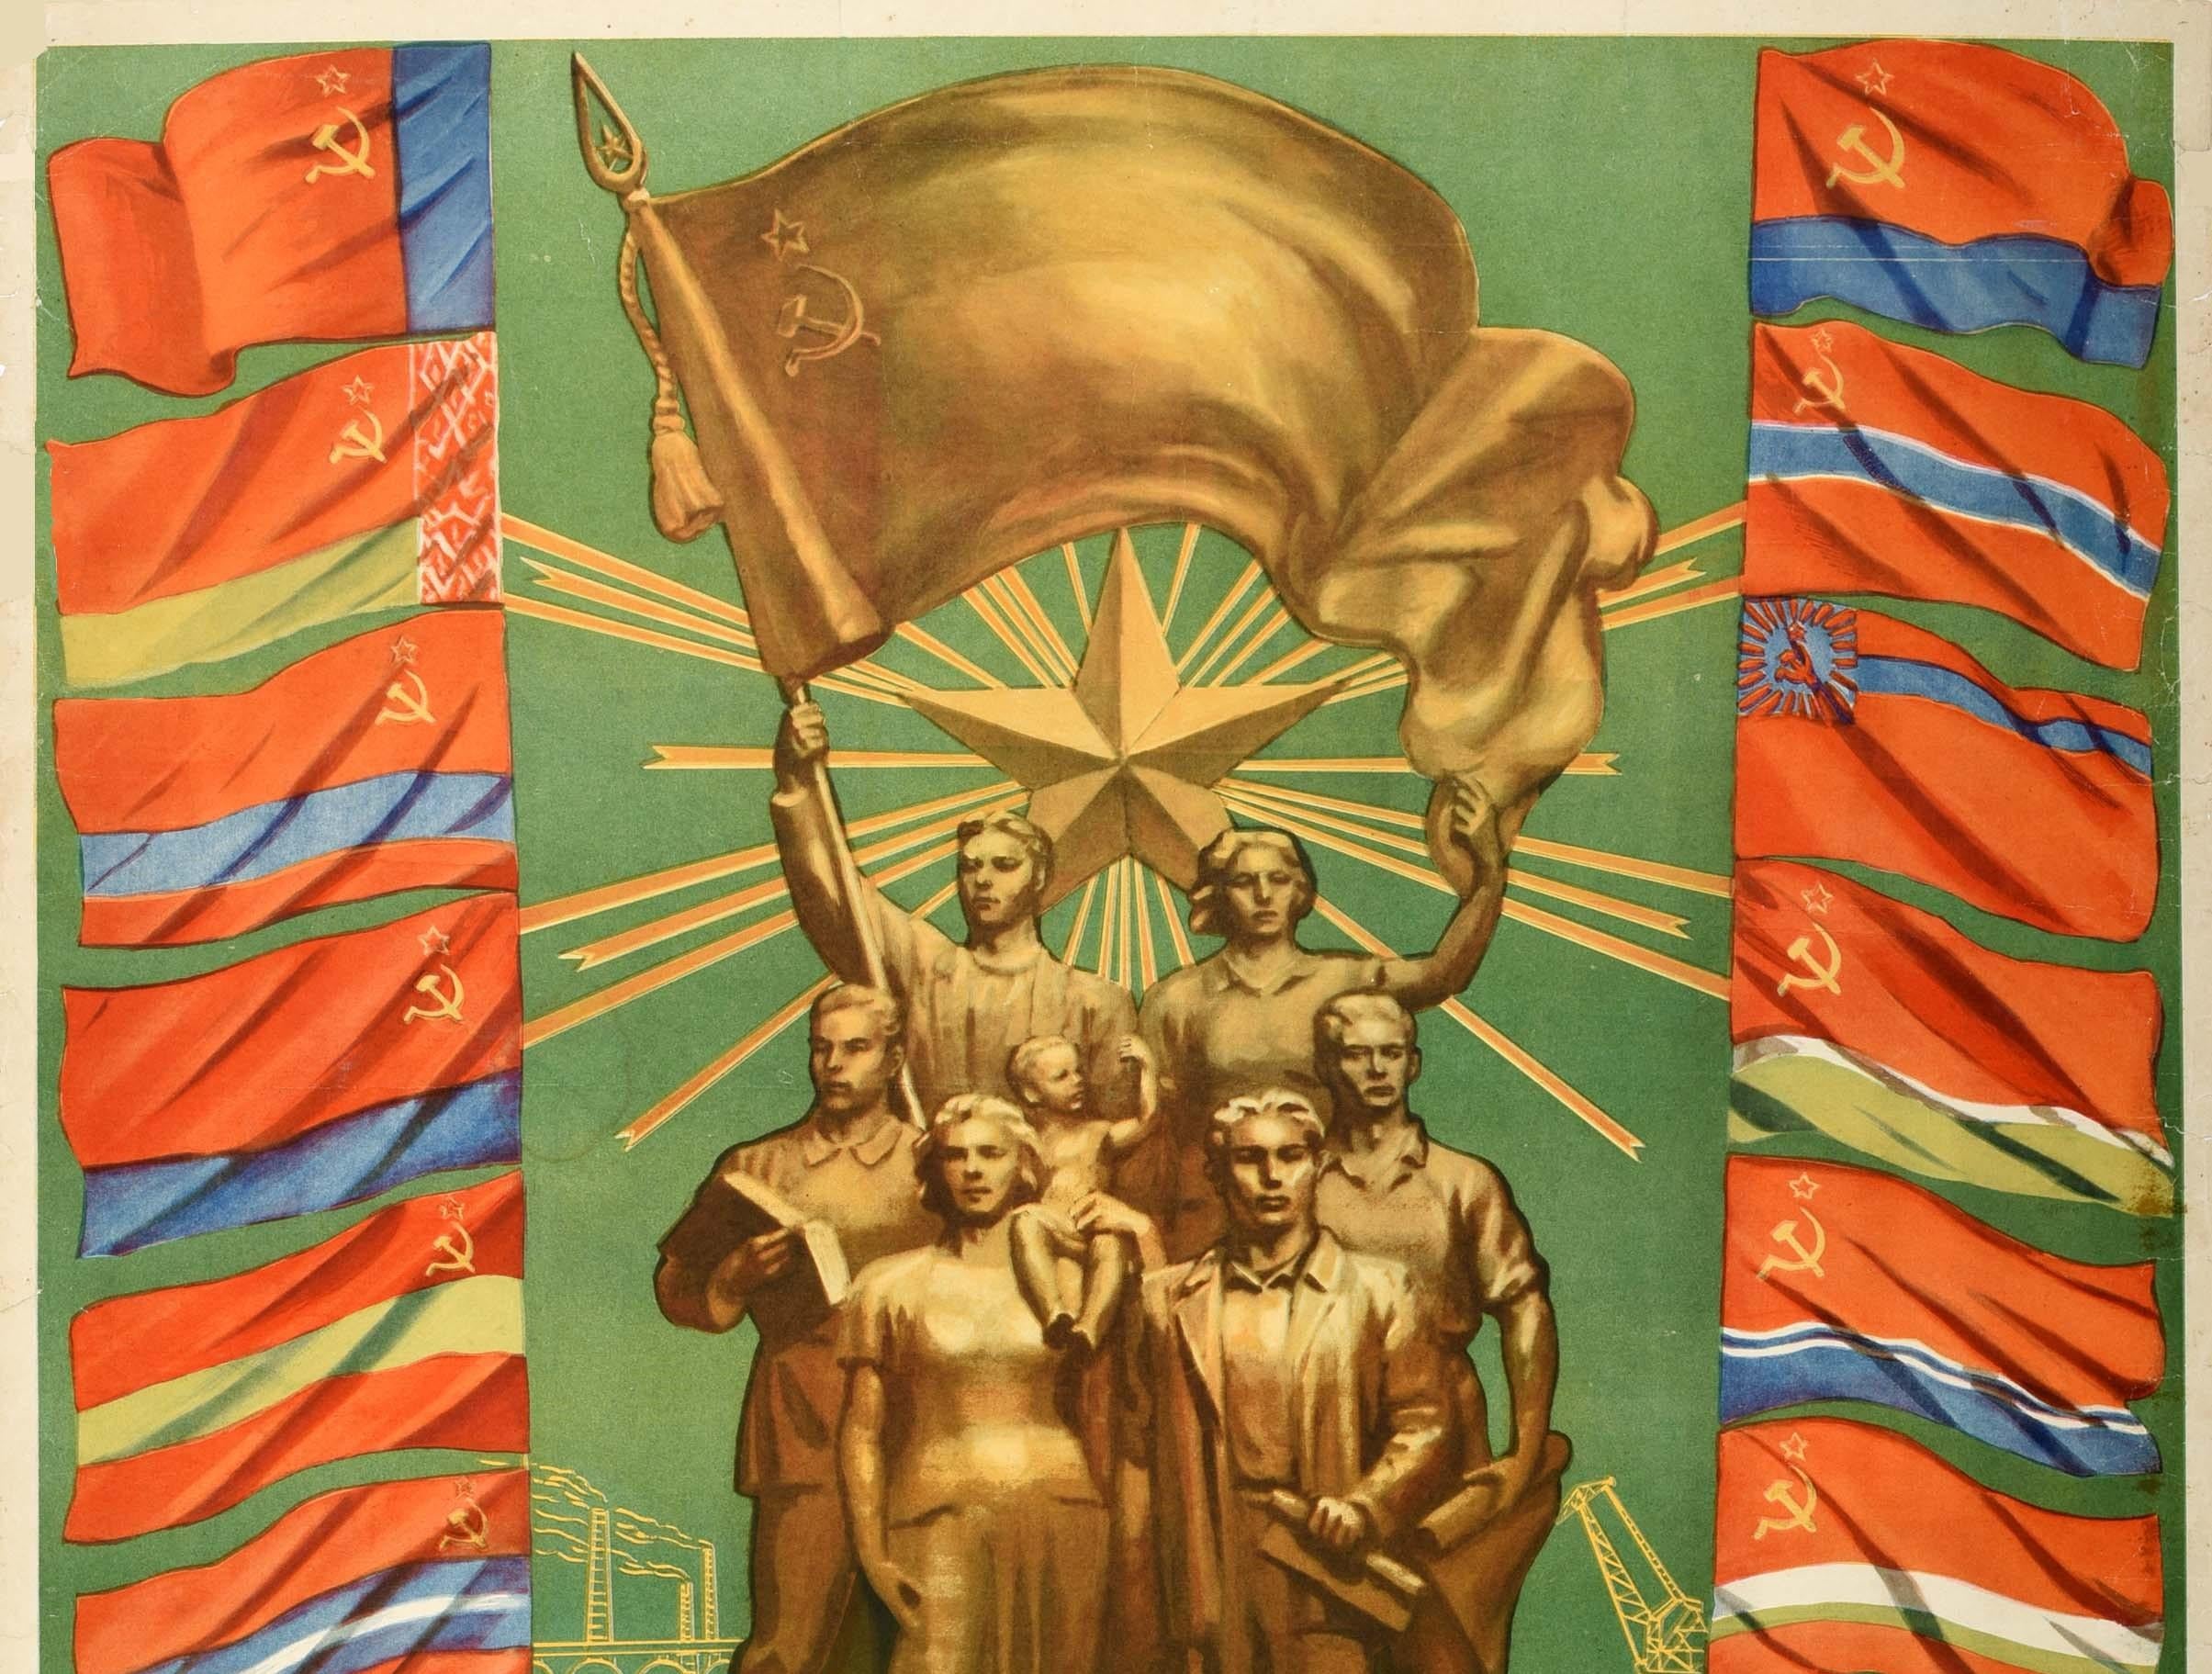 Originales sowjetisches Propagandaplakat für eine Allunions-Industrieausstellung Eine Schule des technischen Fortschritts und der Exzellenz mit einer Statue, die verschiedene Personen zeigt, darunter einige, die Bücher und Papiere halten, eine